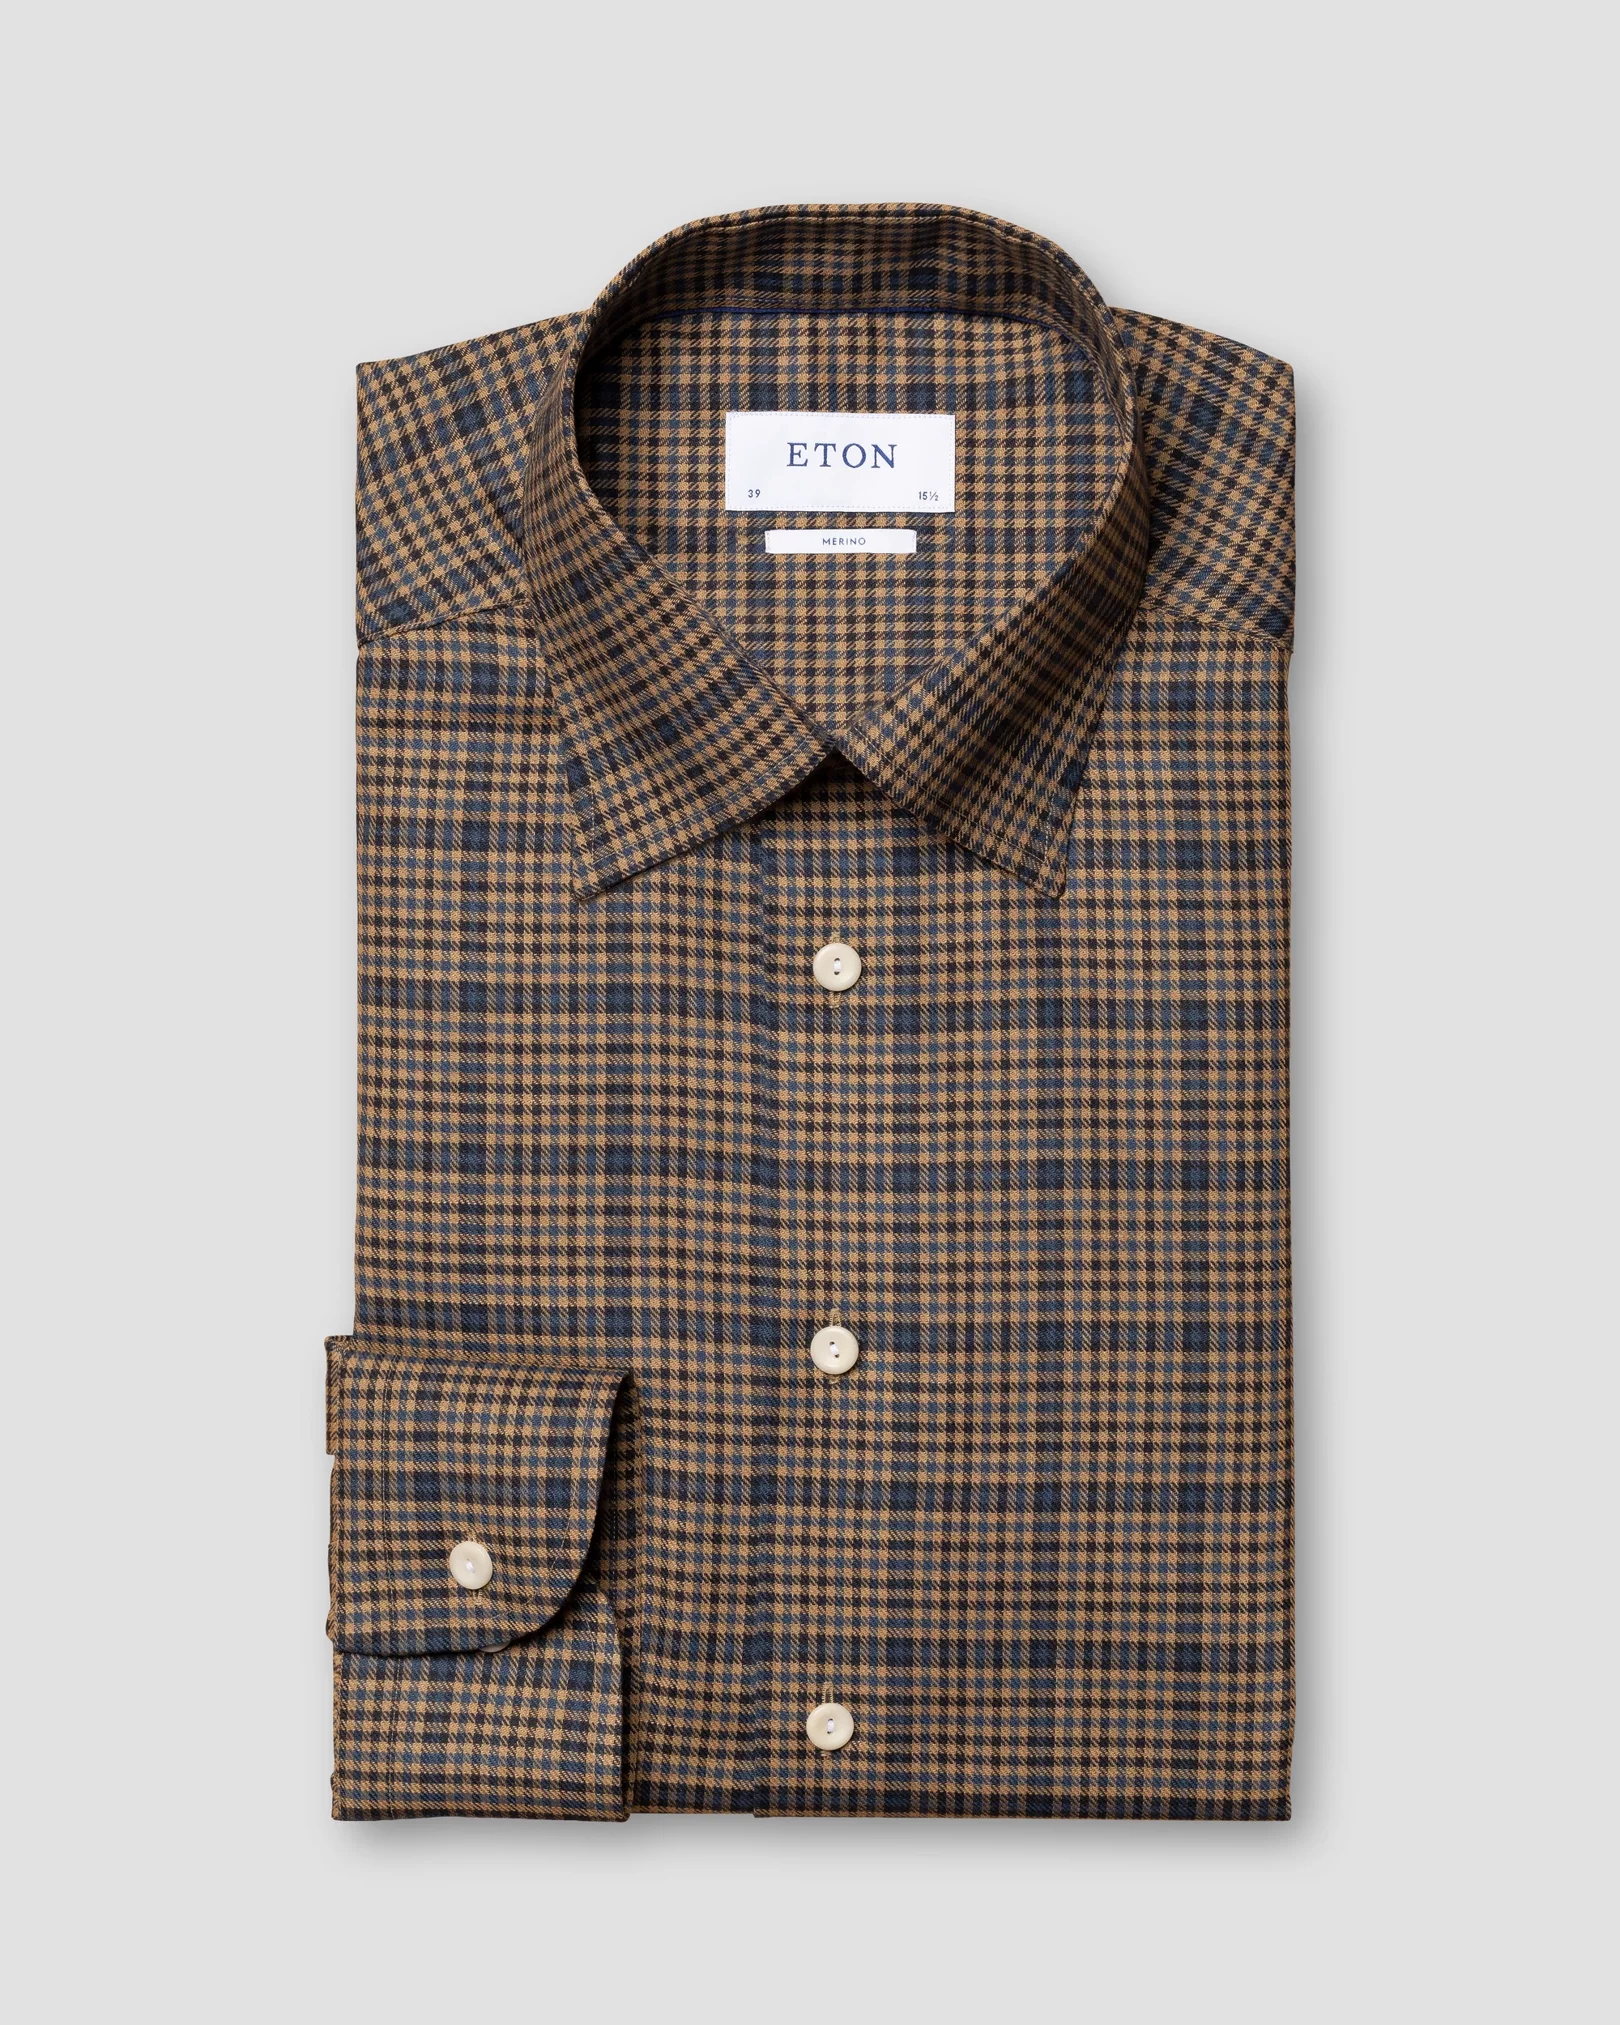 Eton - brown tweed check merino wool shirt